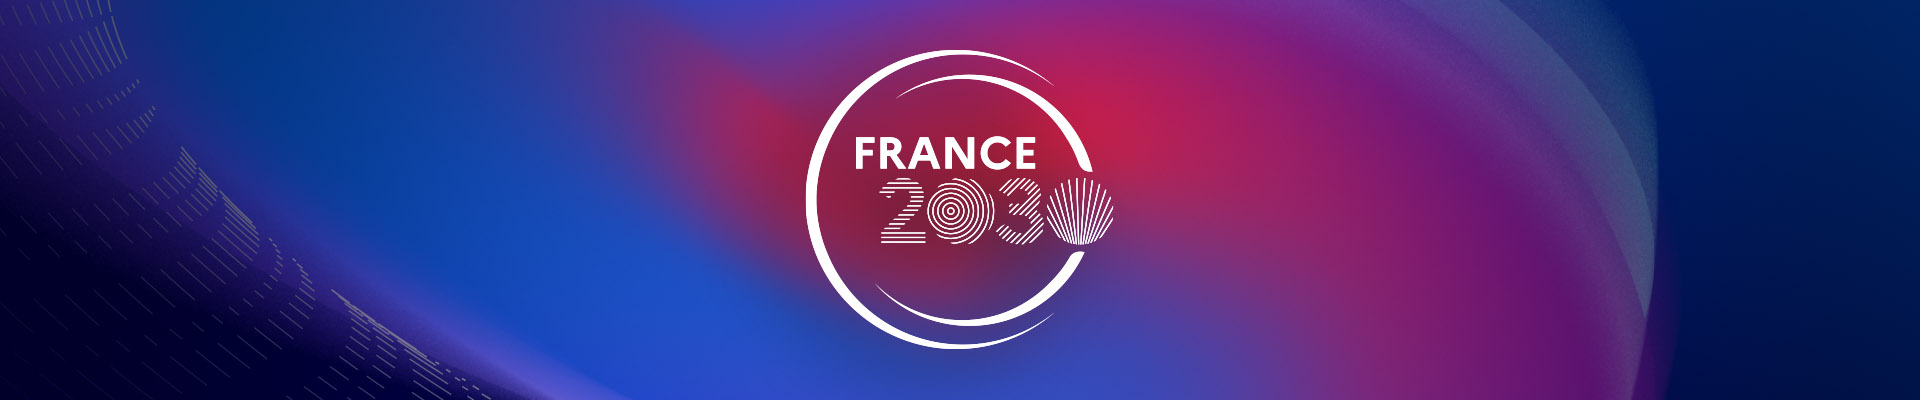 Les leviers de France 2030